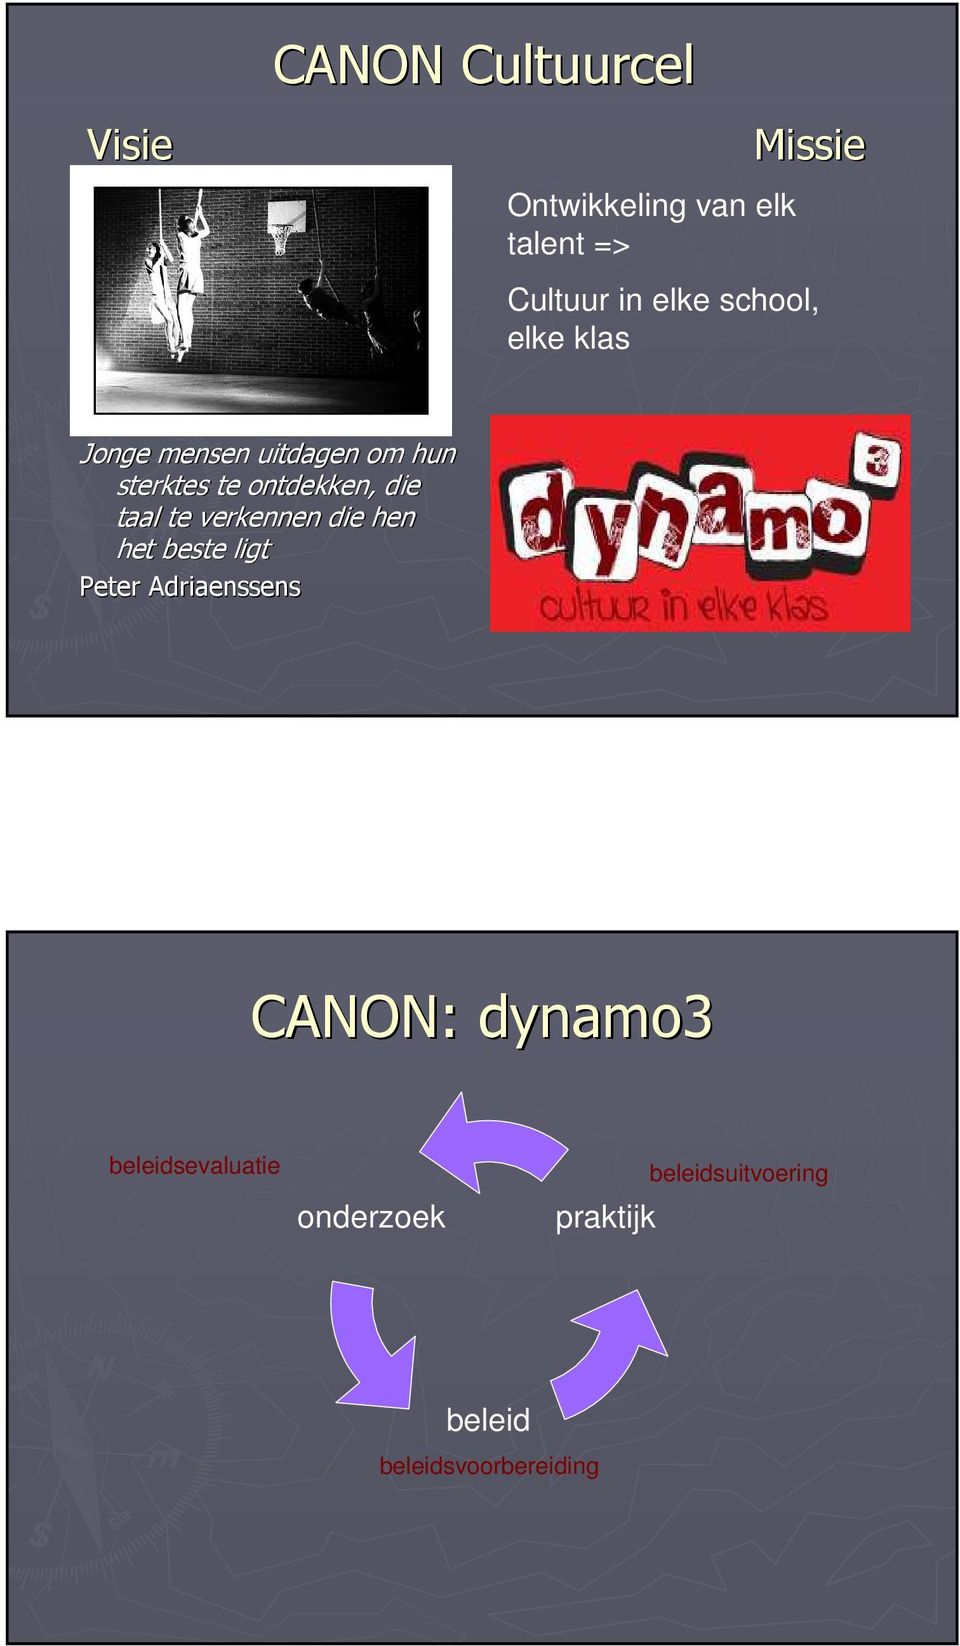 taal te verkennen die hen het beste ligt Peter Adriaenssens CANON: dynamo3